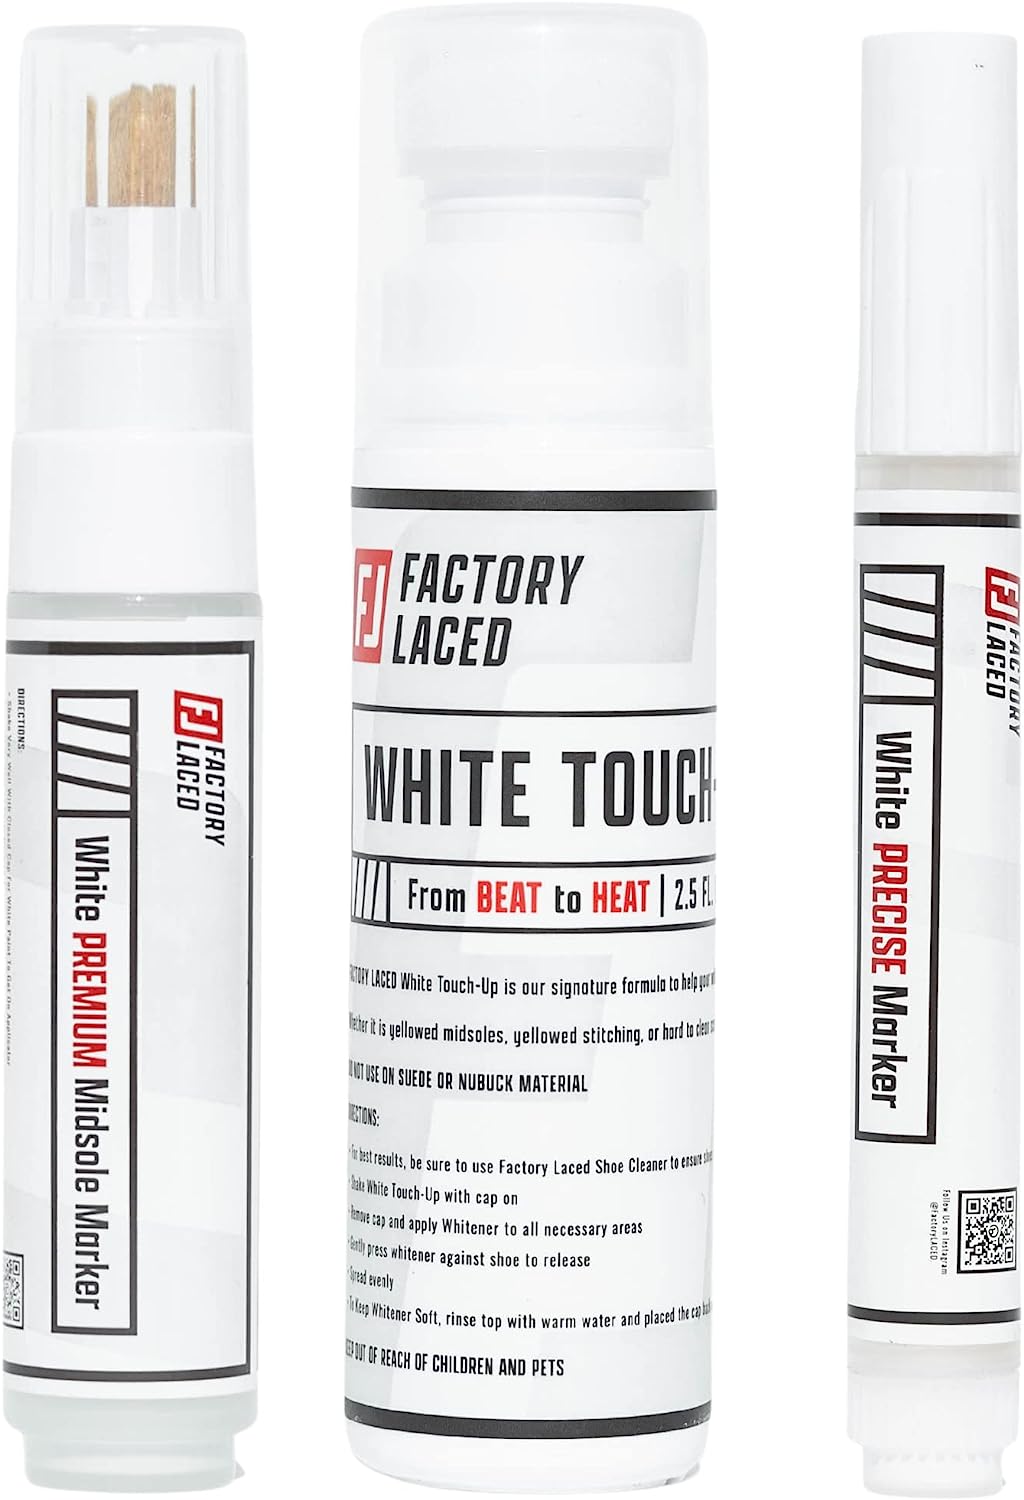  Tarrago Super White- Shoe Whitener Instant Cleaner for